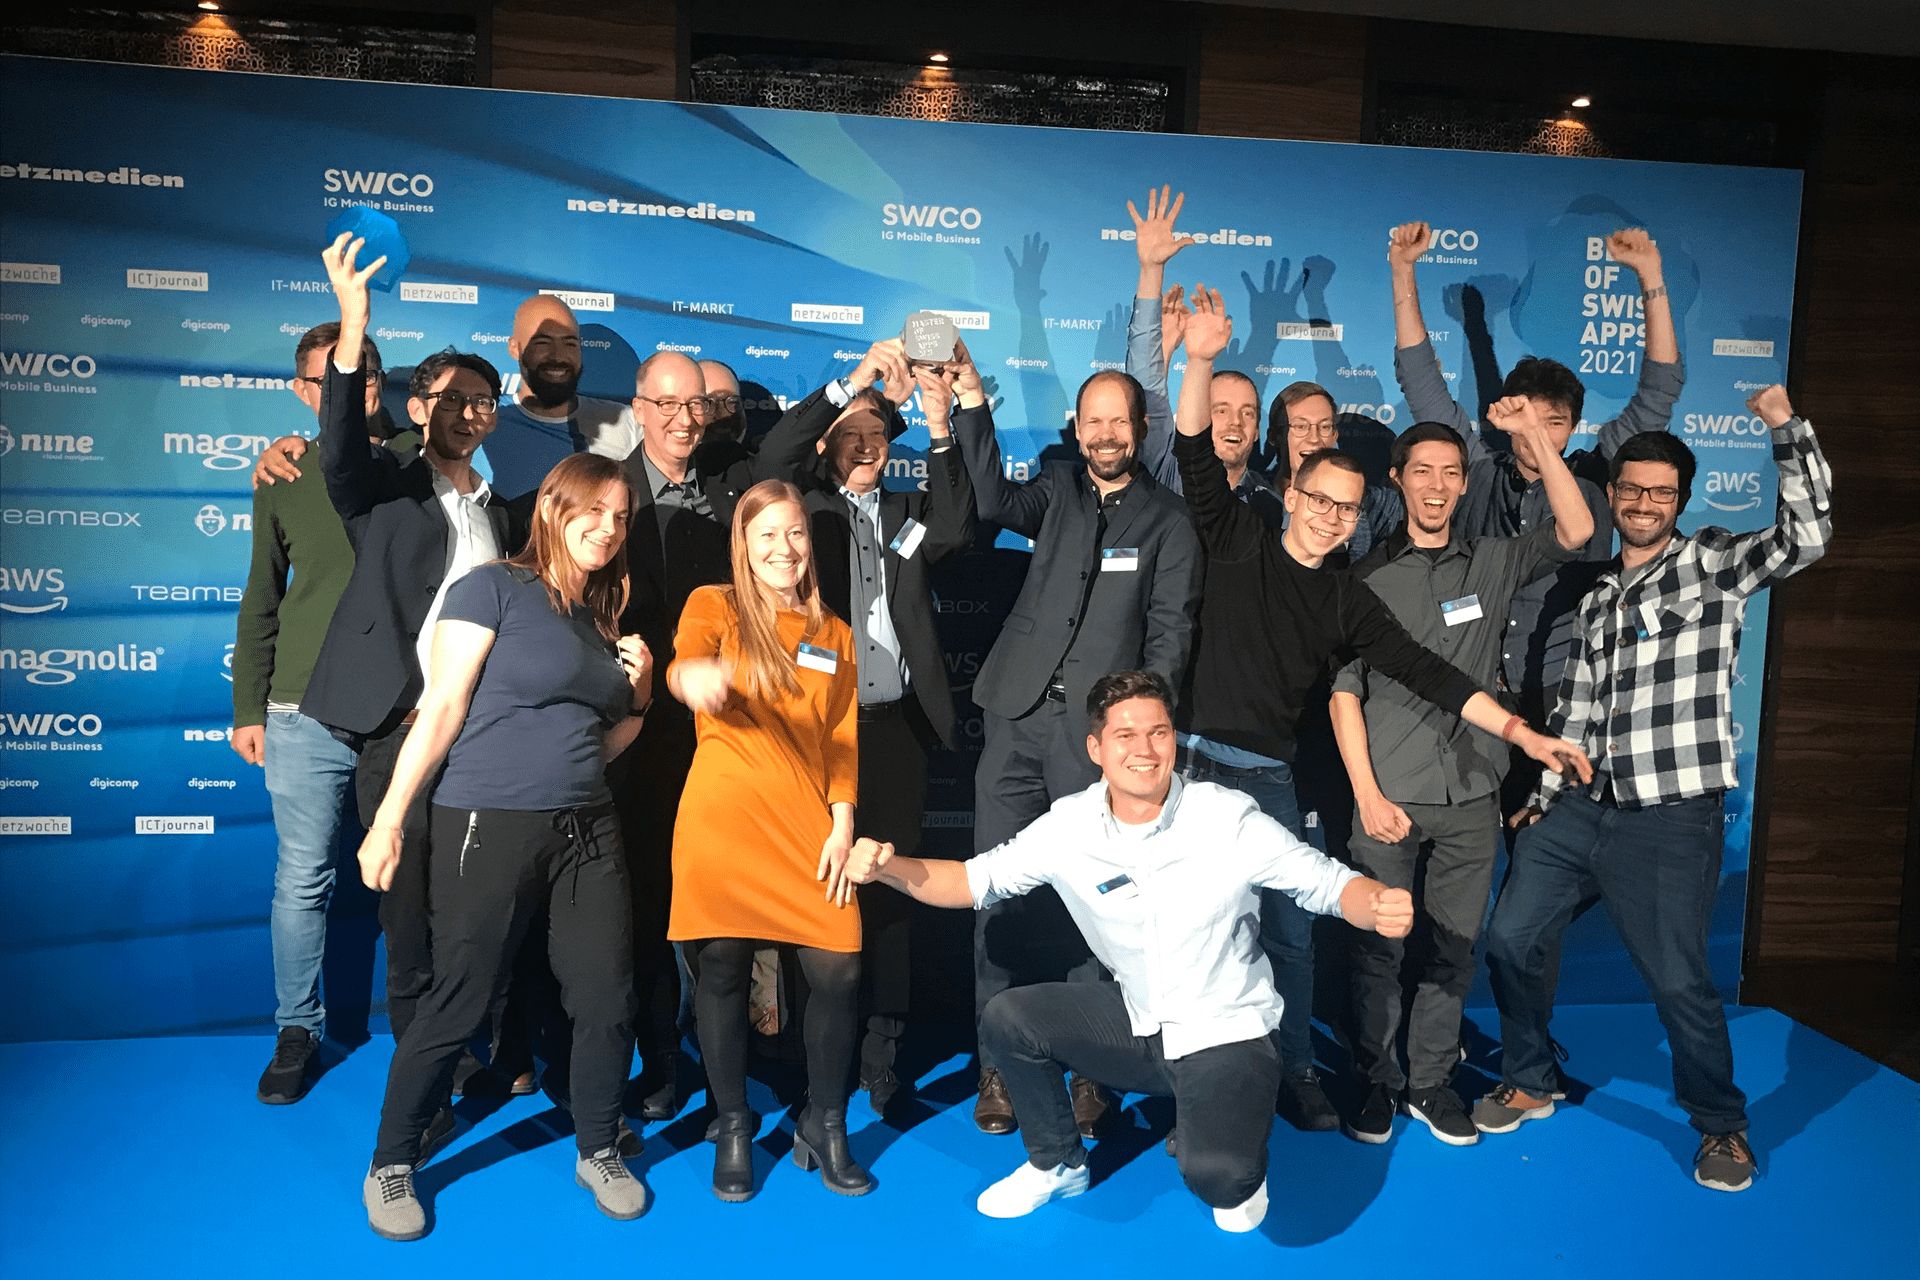 Il team dell'applicazione swisstopo vincitore del premio 2021 "Best of Swiss Apps"